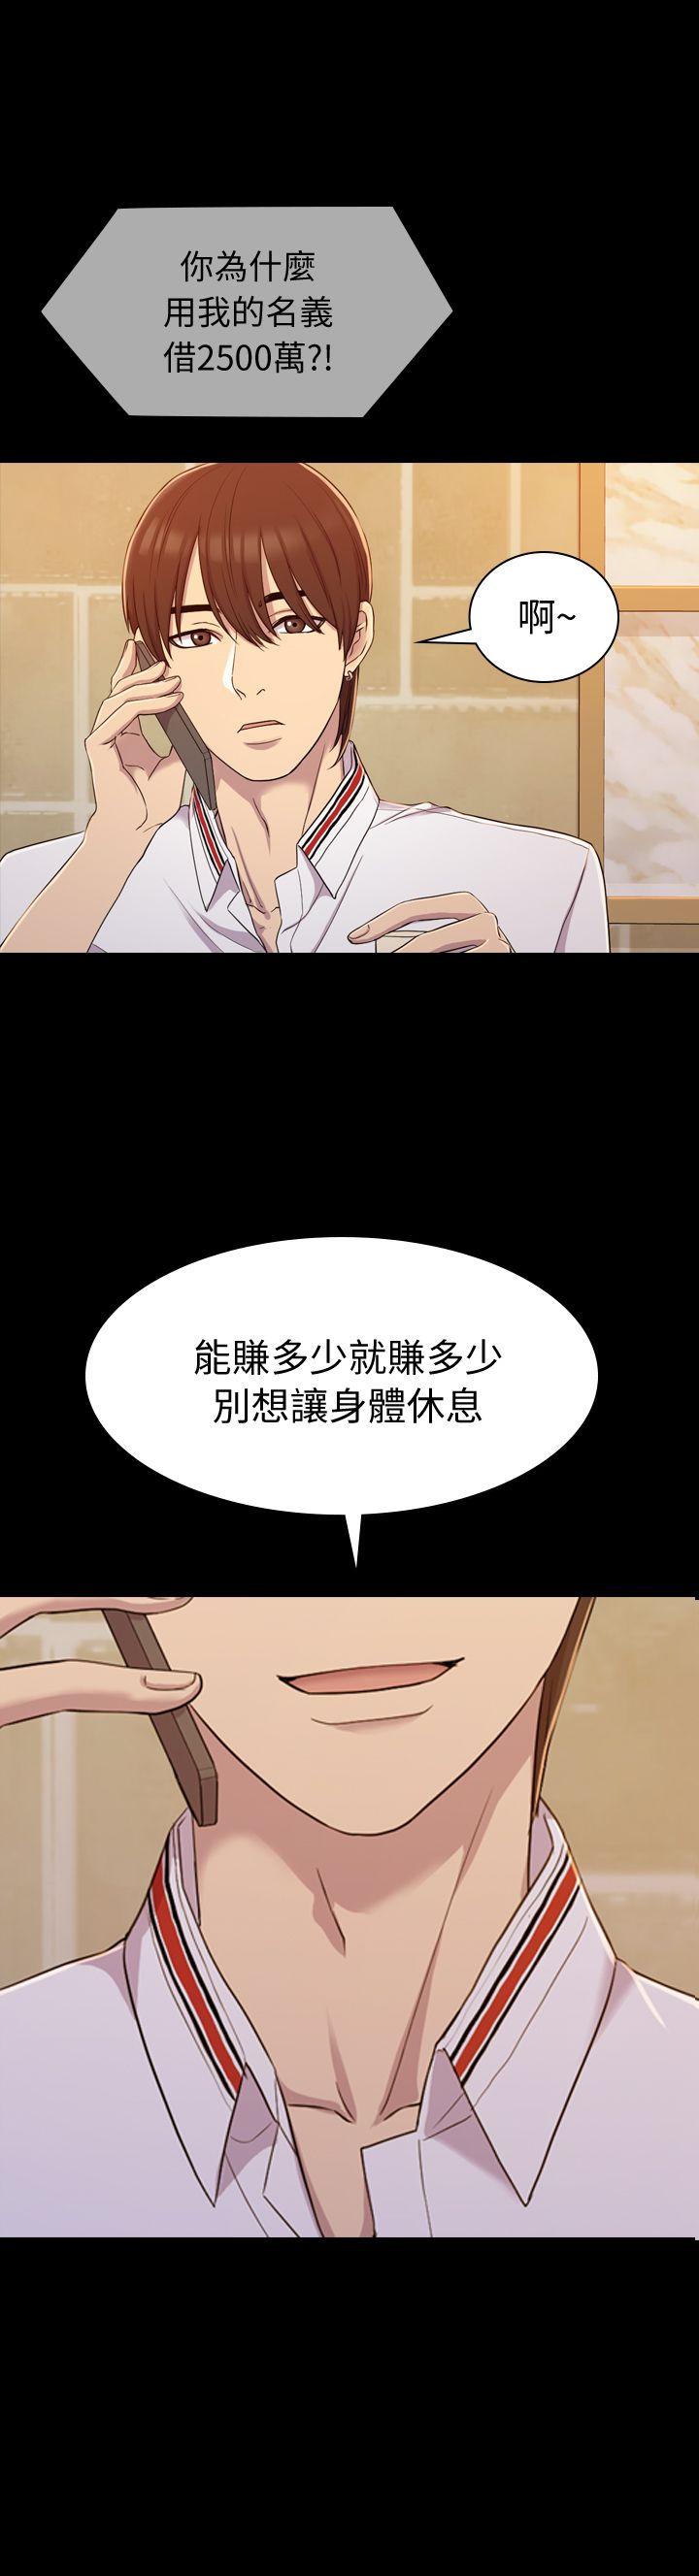 初恋陷阱  第10话 漫画图片1.jpg